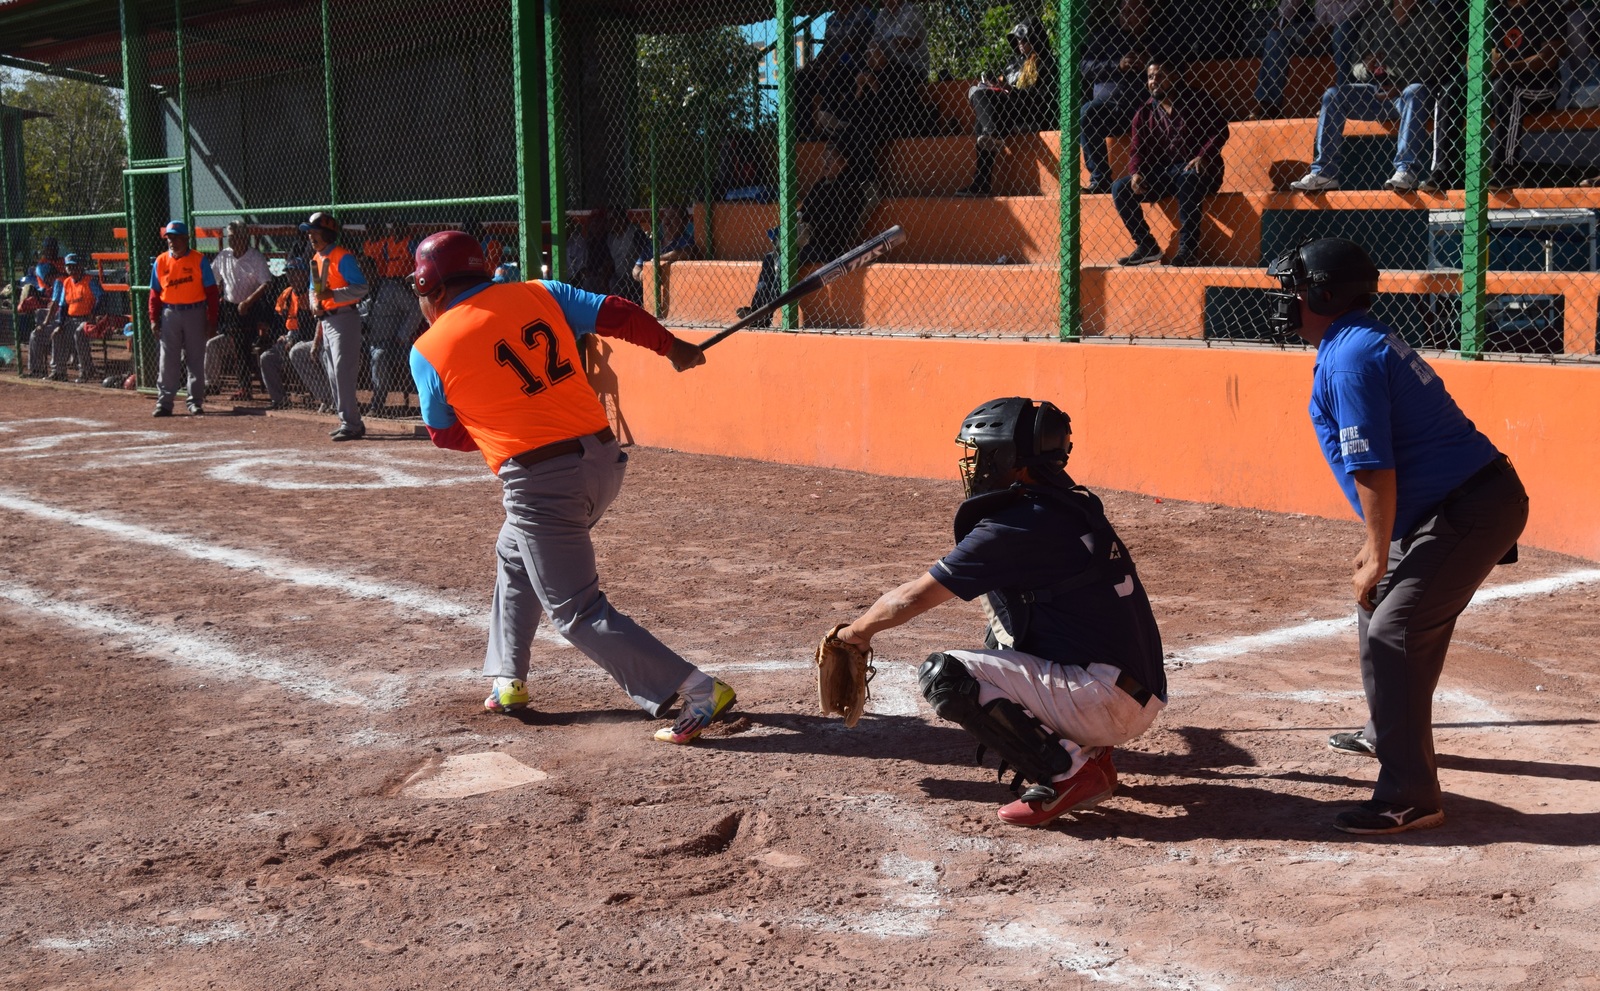 Se reanuda acción en torneo de softbol de la Sección 35